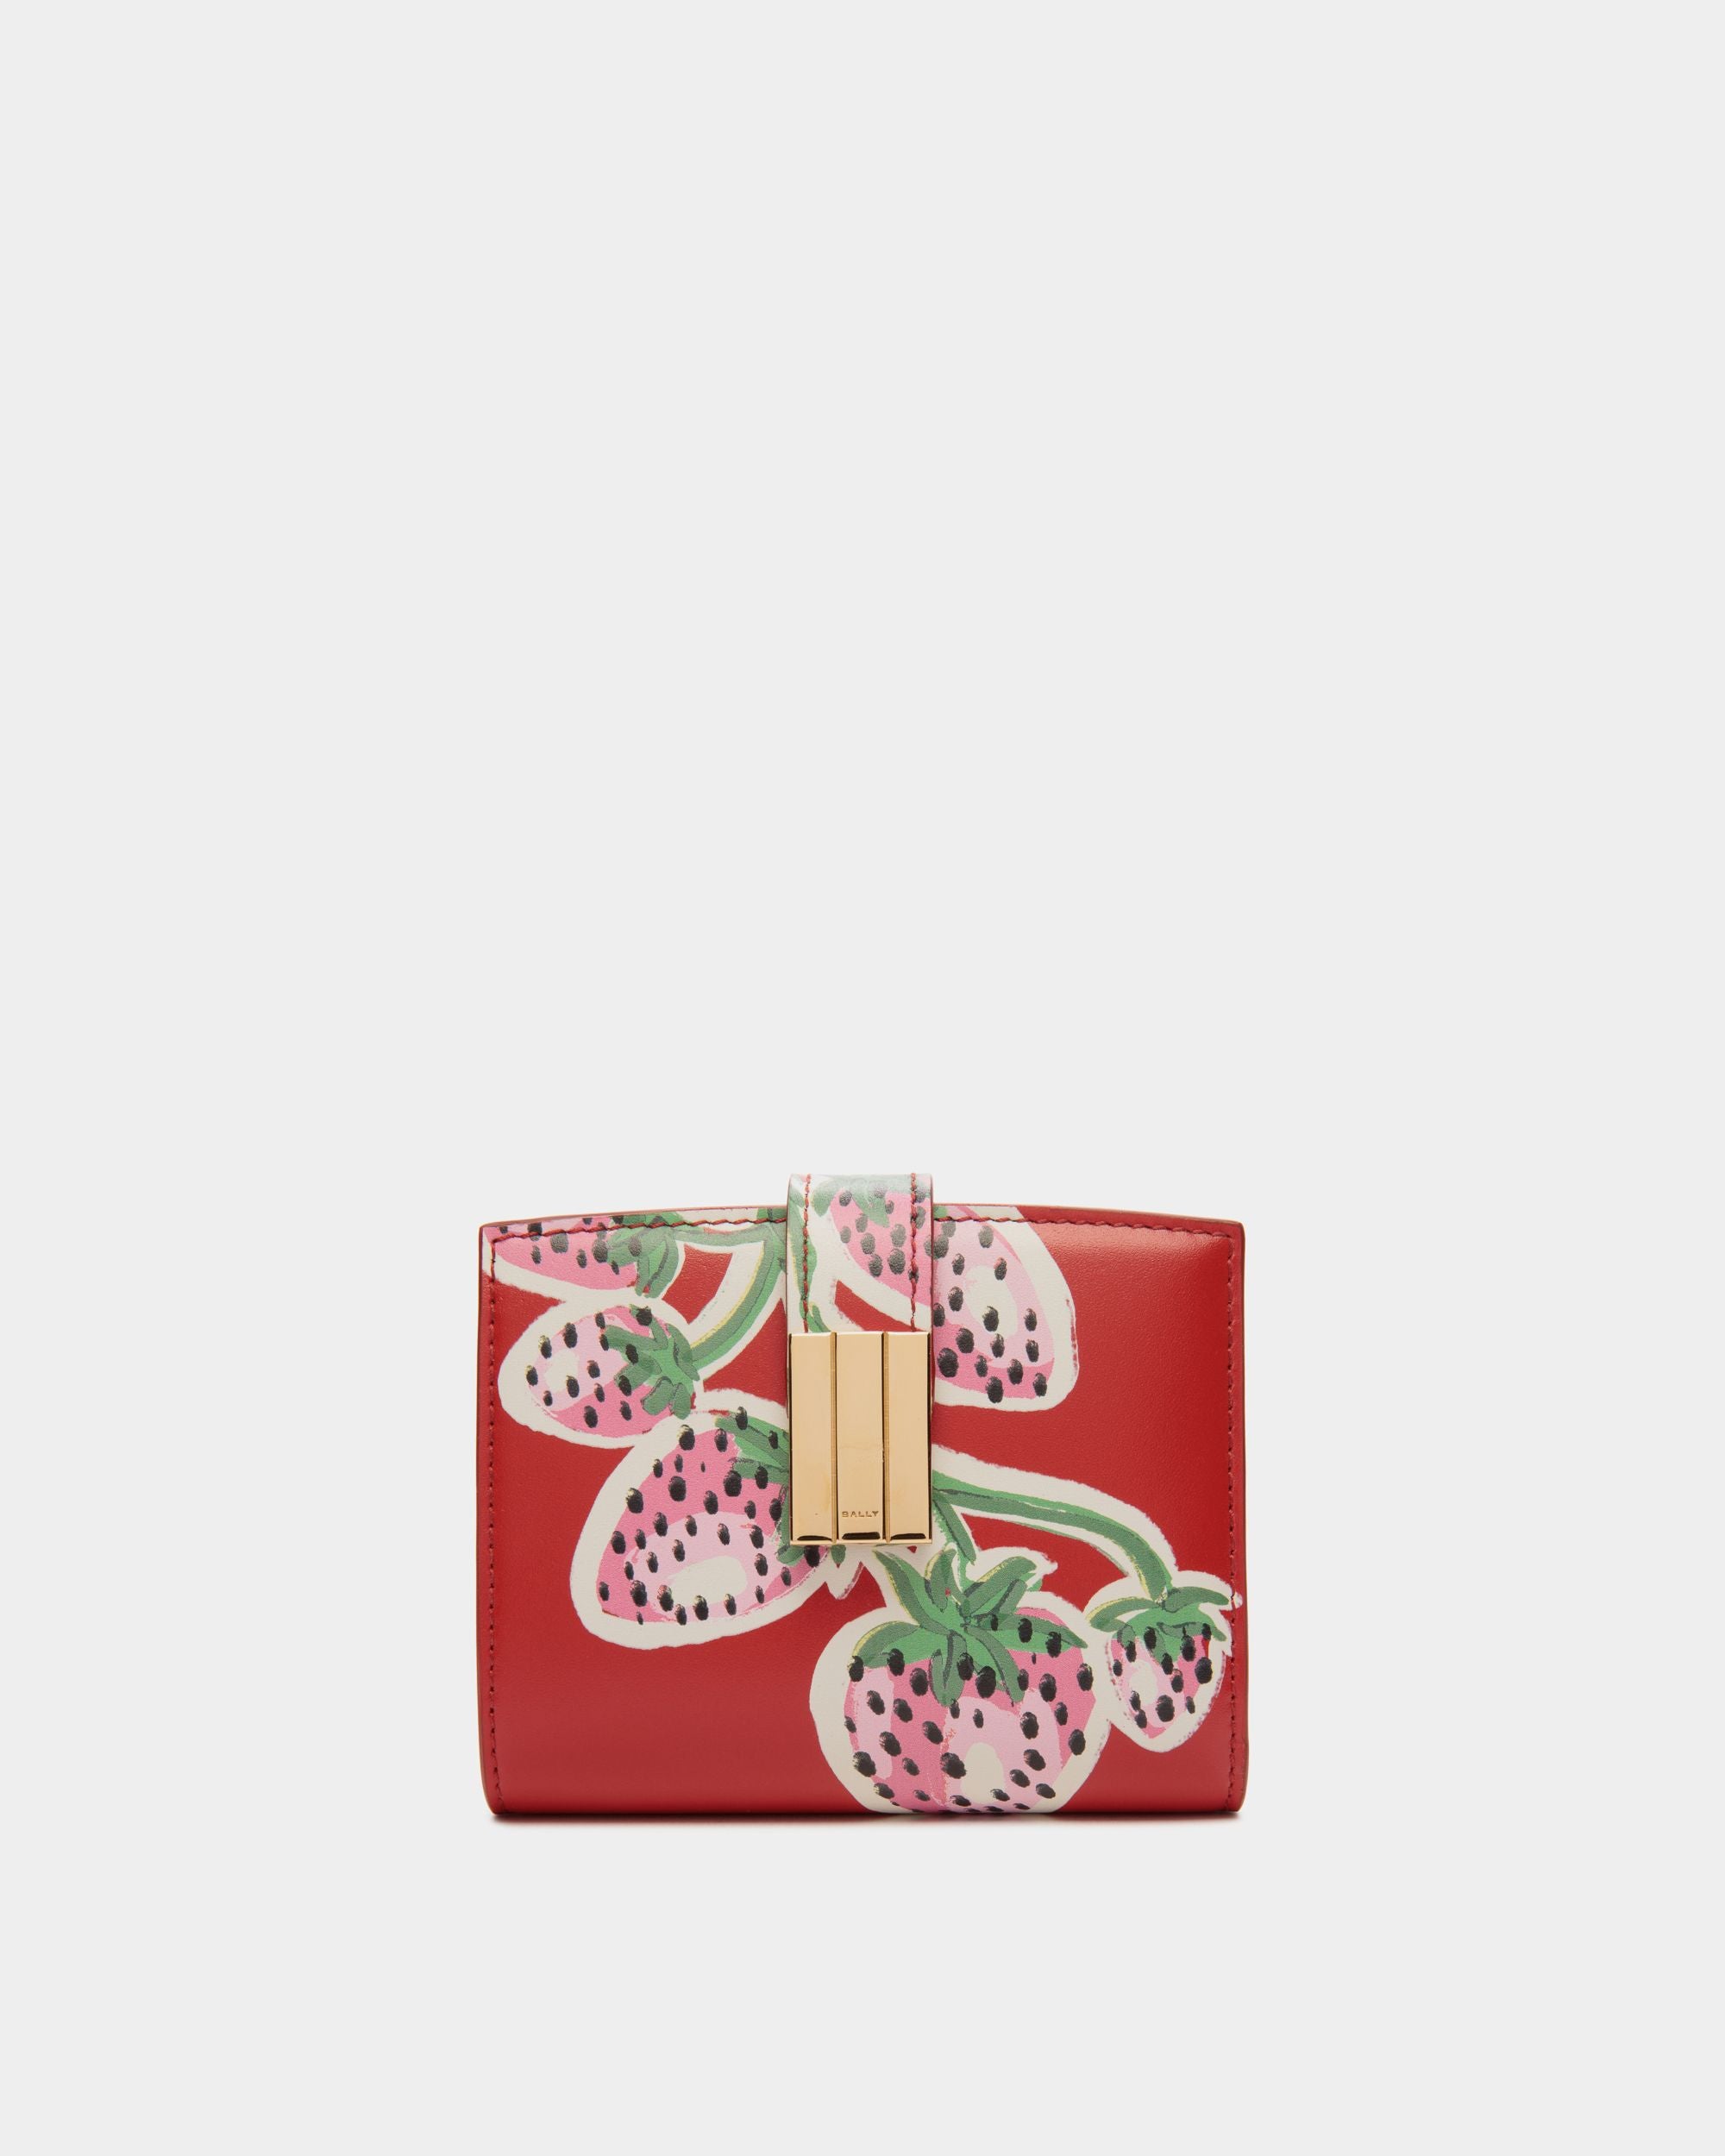 Ollam | Bedruckte Geldbörse für Damen aus Leder in Strawberry | Bally | Still Life Vorderseite